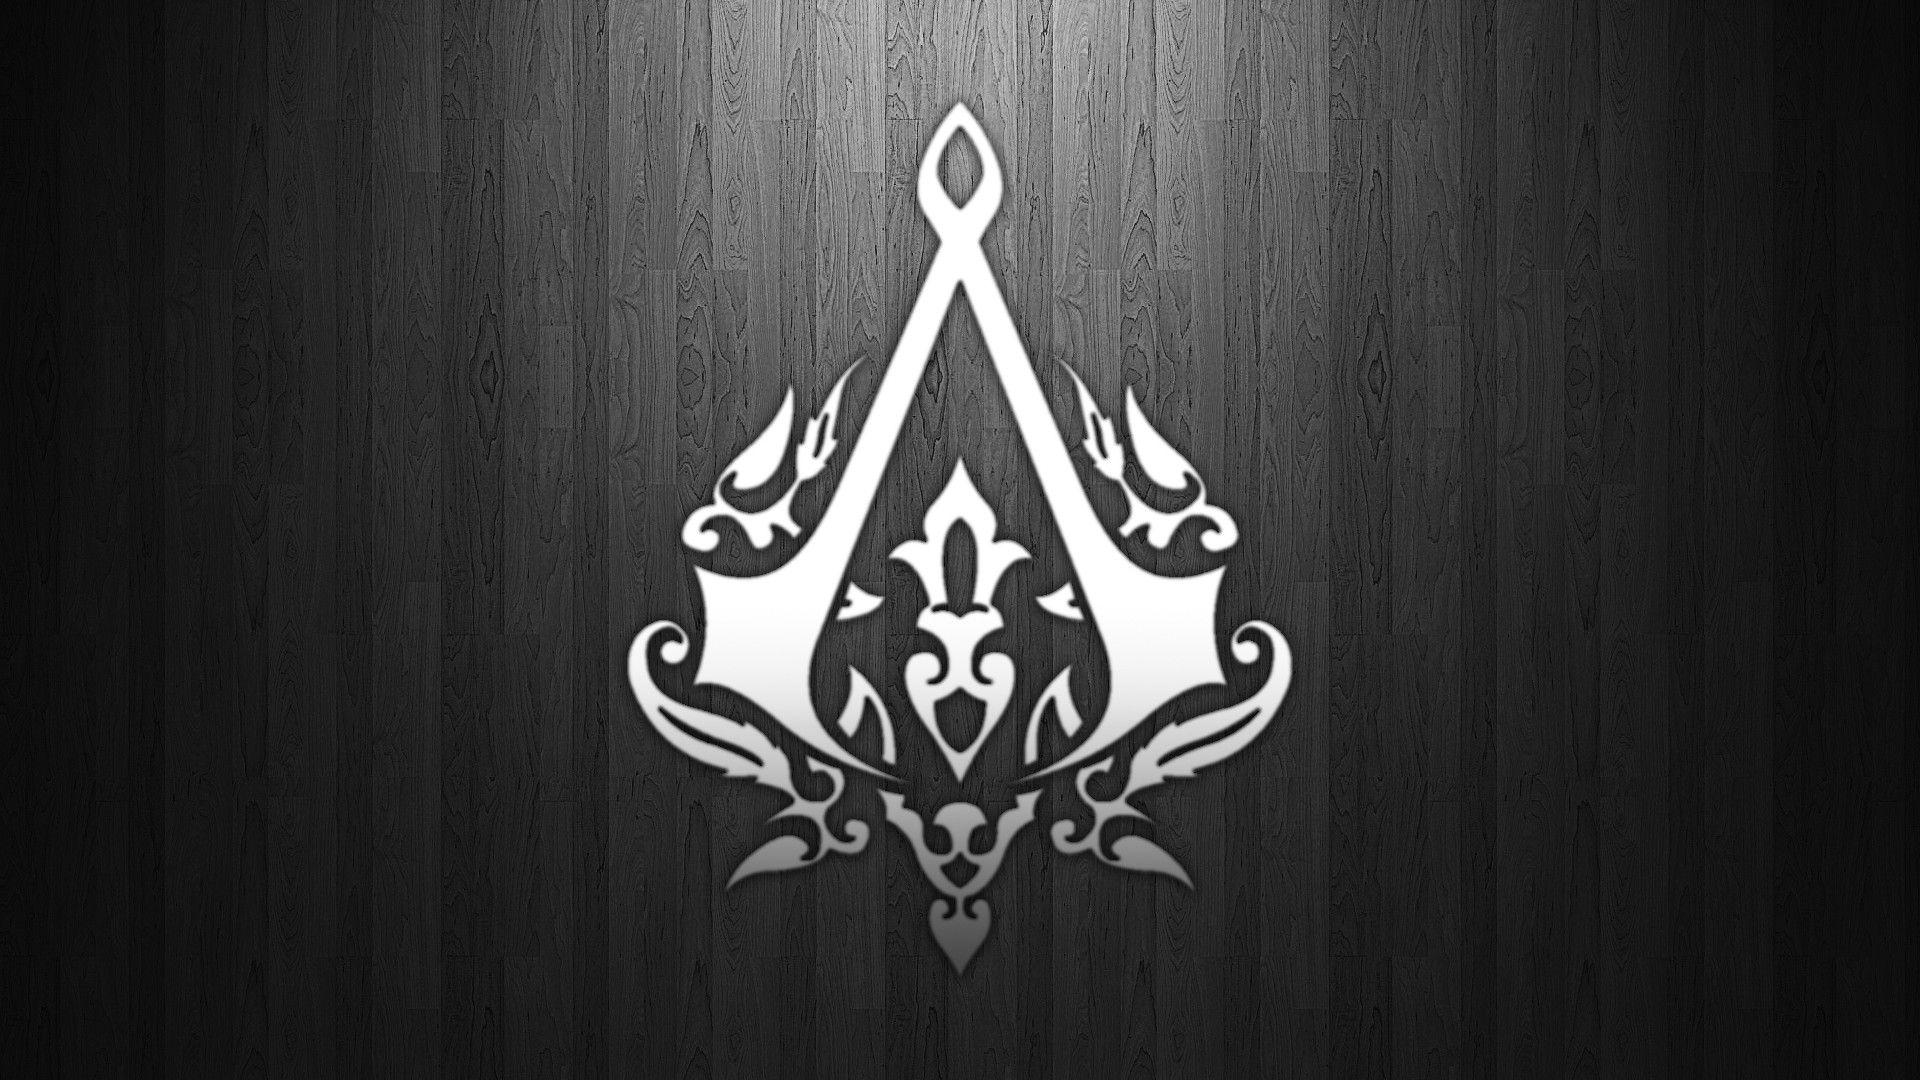 Download Assassins Creed Wallpaper 1920x1080